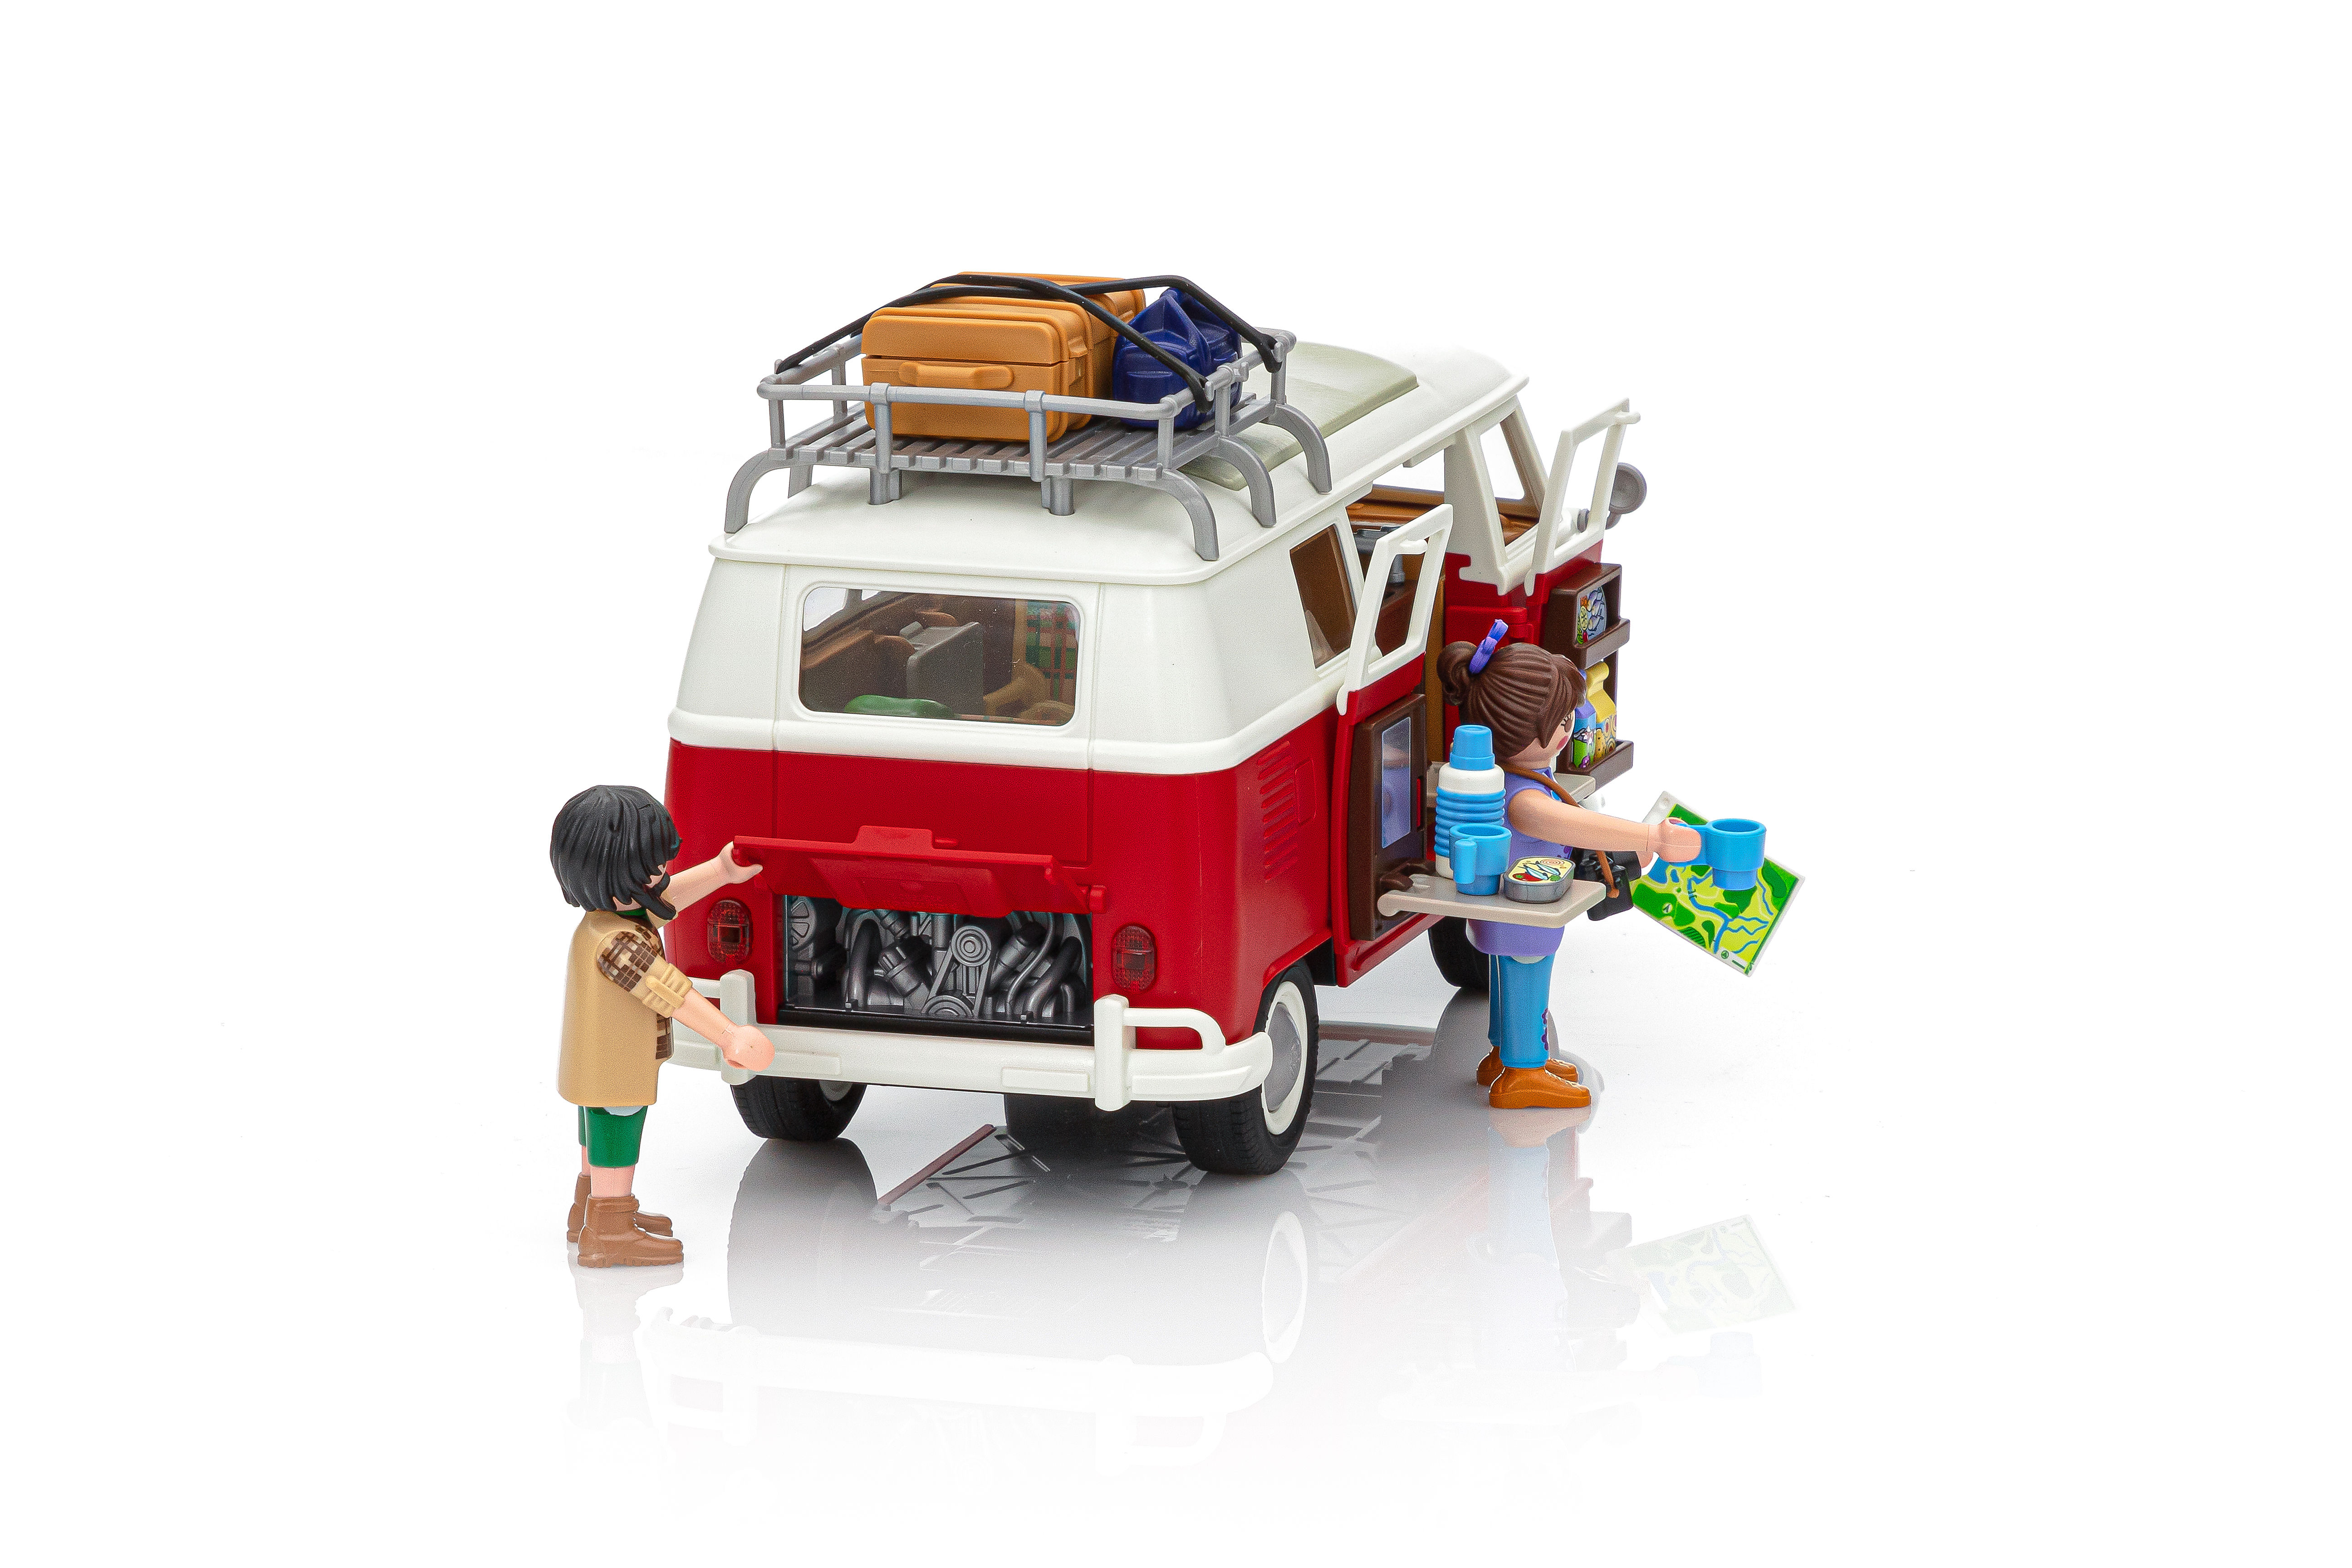 Le célébrissime fourgon aménagé VW Combi T1 arrive chez Playmobil